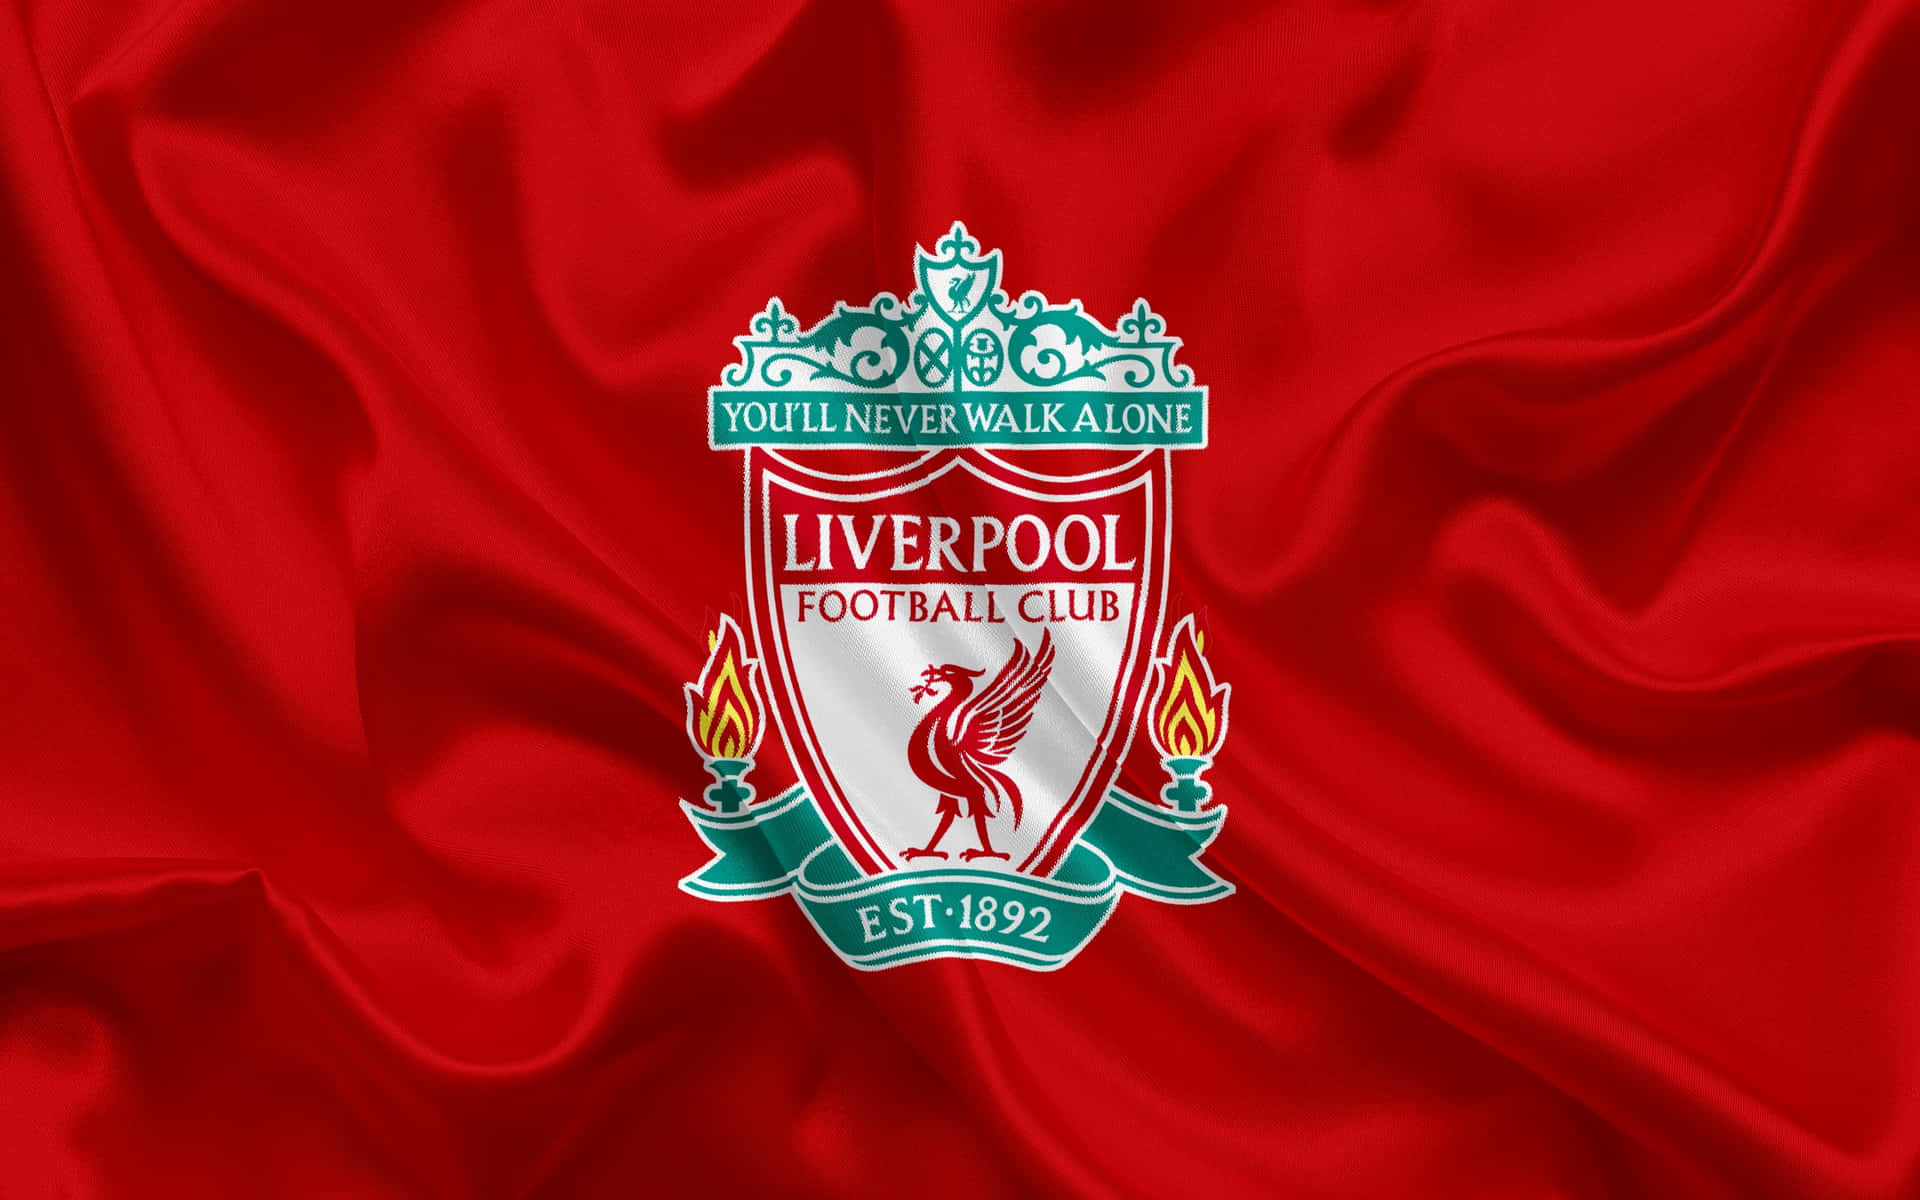 Demuestratu Orgullo Por El Liverpool Football Club Con El Logotipo Oficial Del Equipo. Fondo de pantalla